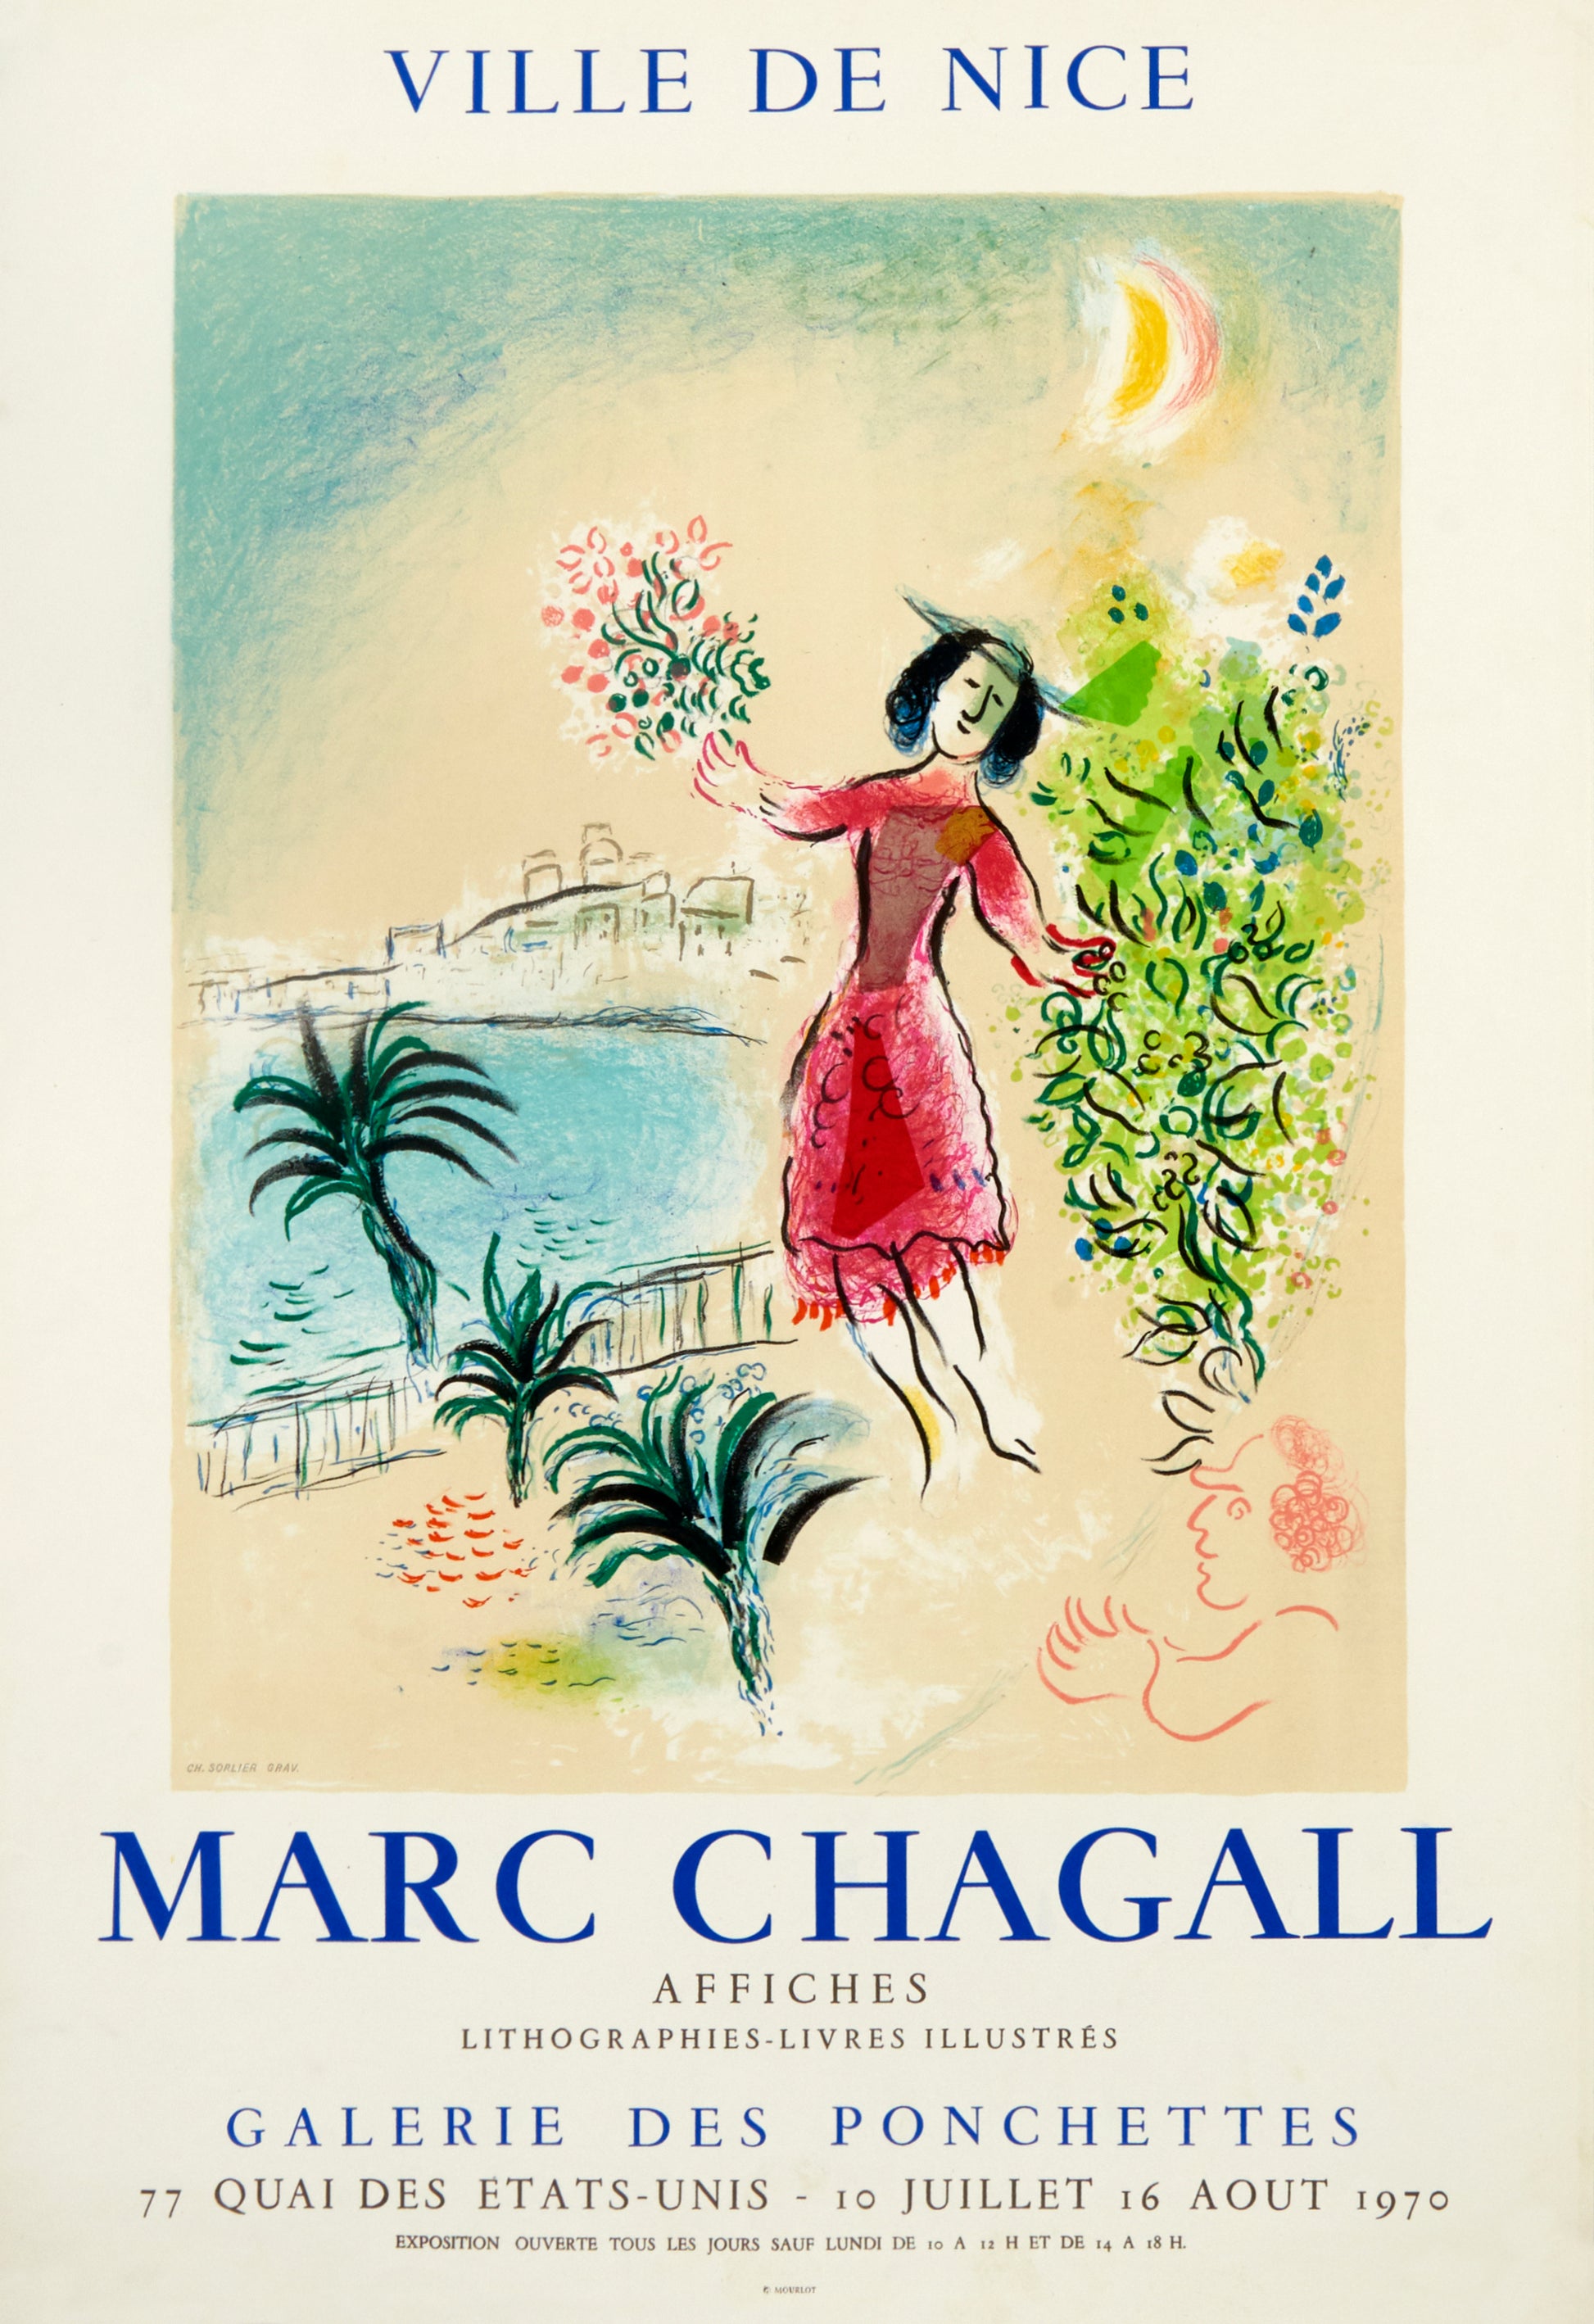 Ville de Nice, Galerie des Ponchettes by Marc Chagall - Mourlot Editions - Fine_Art - Poster - Lithograph - Wall Art - Vintage - Prints - Original